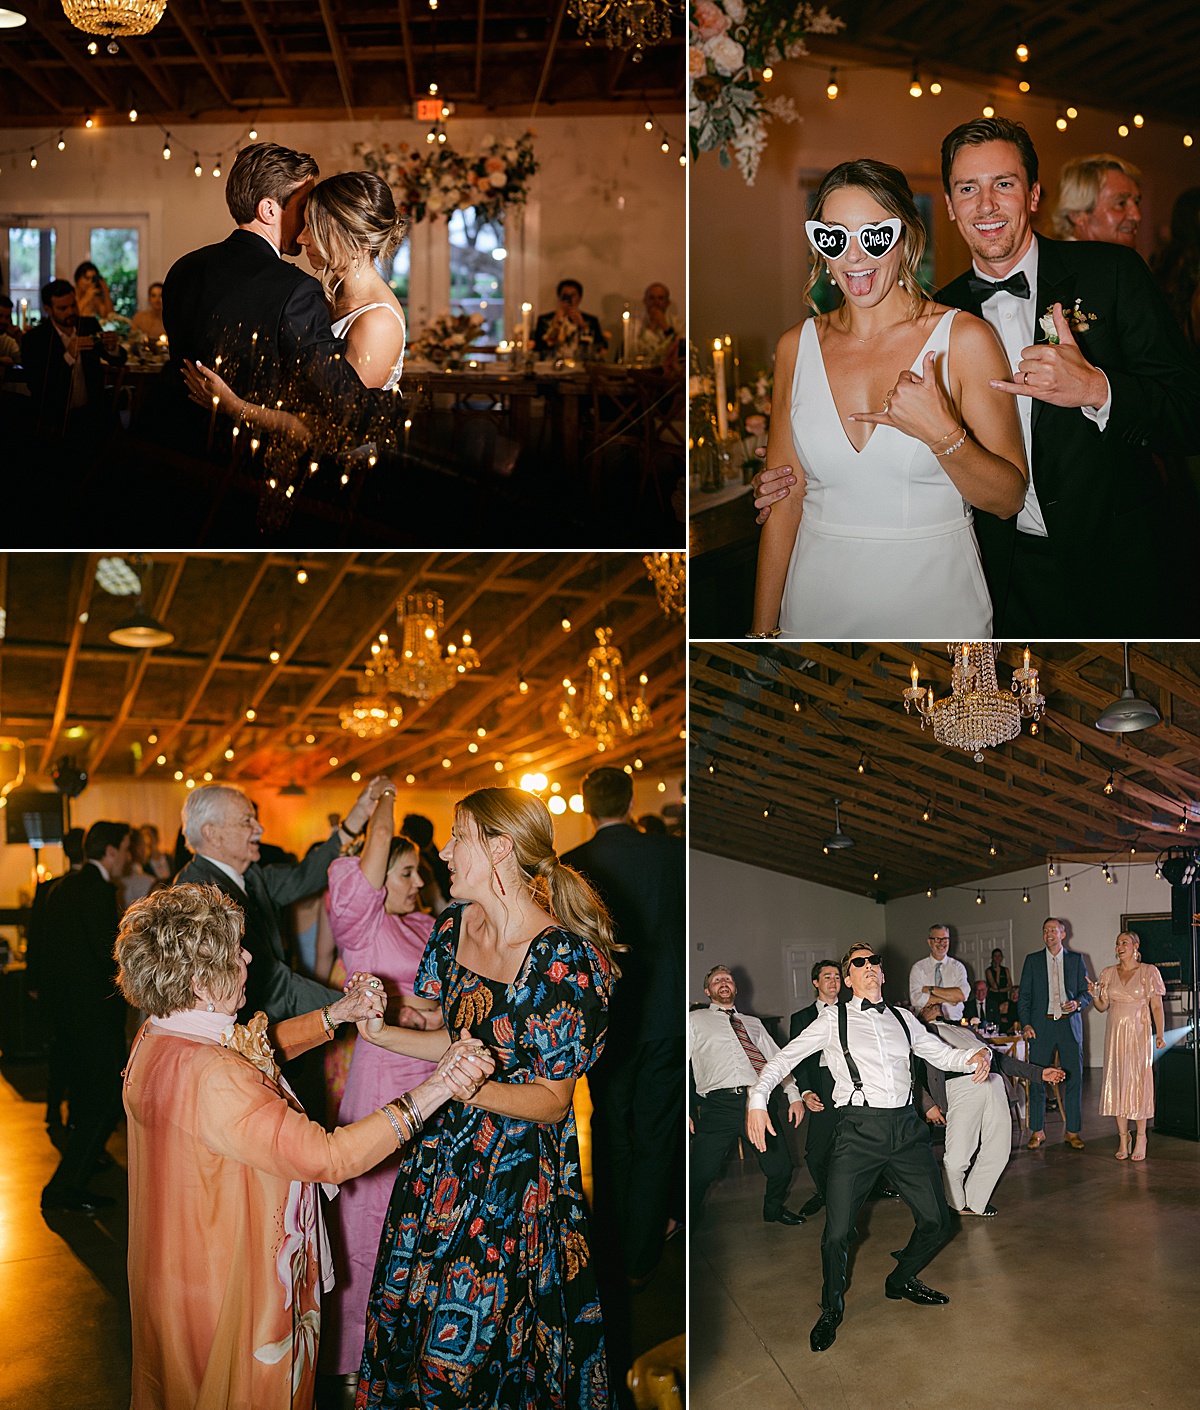 Fun wedding reception dance party photos.